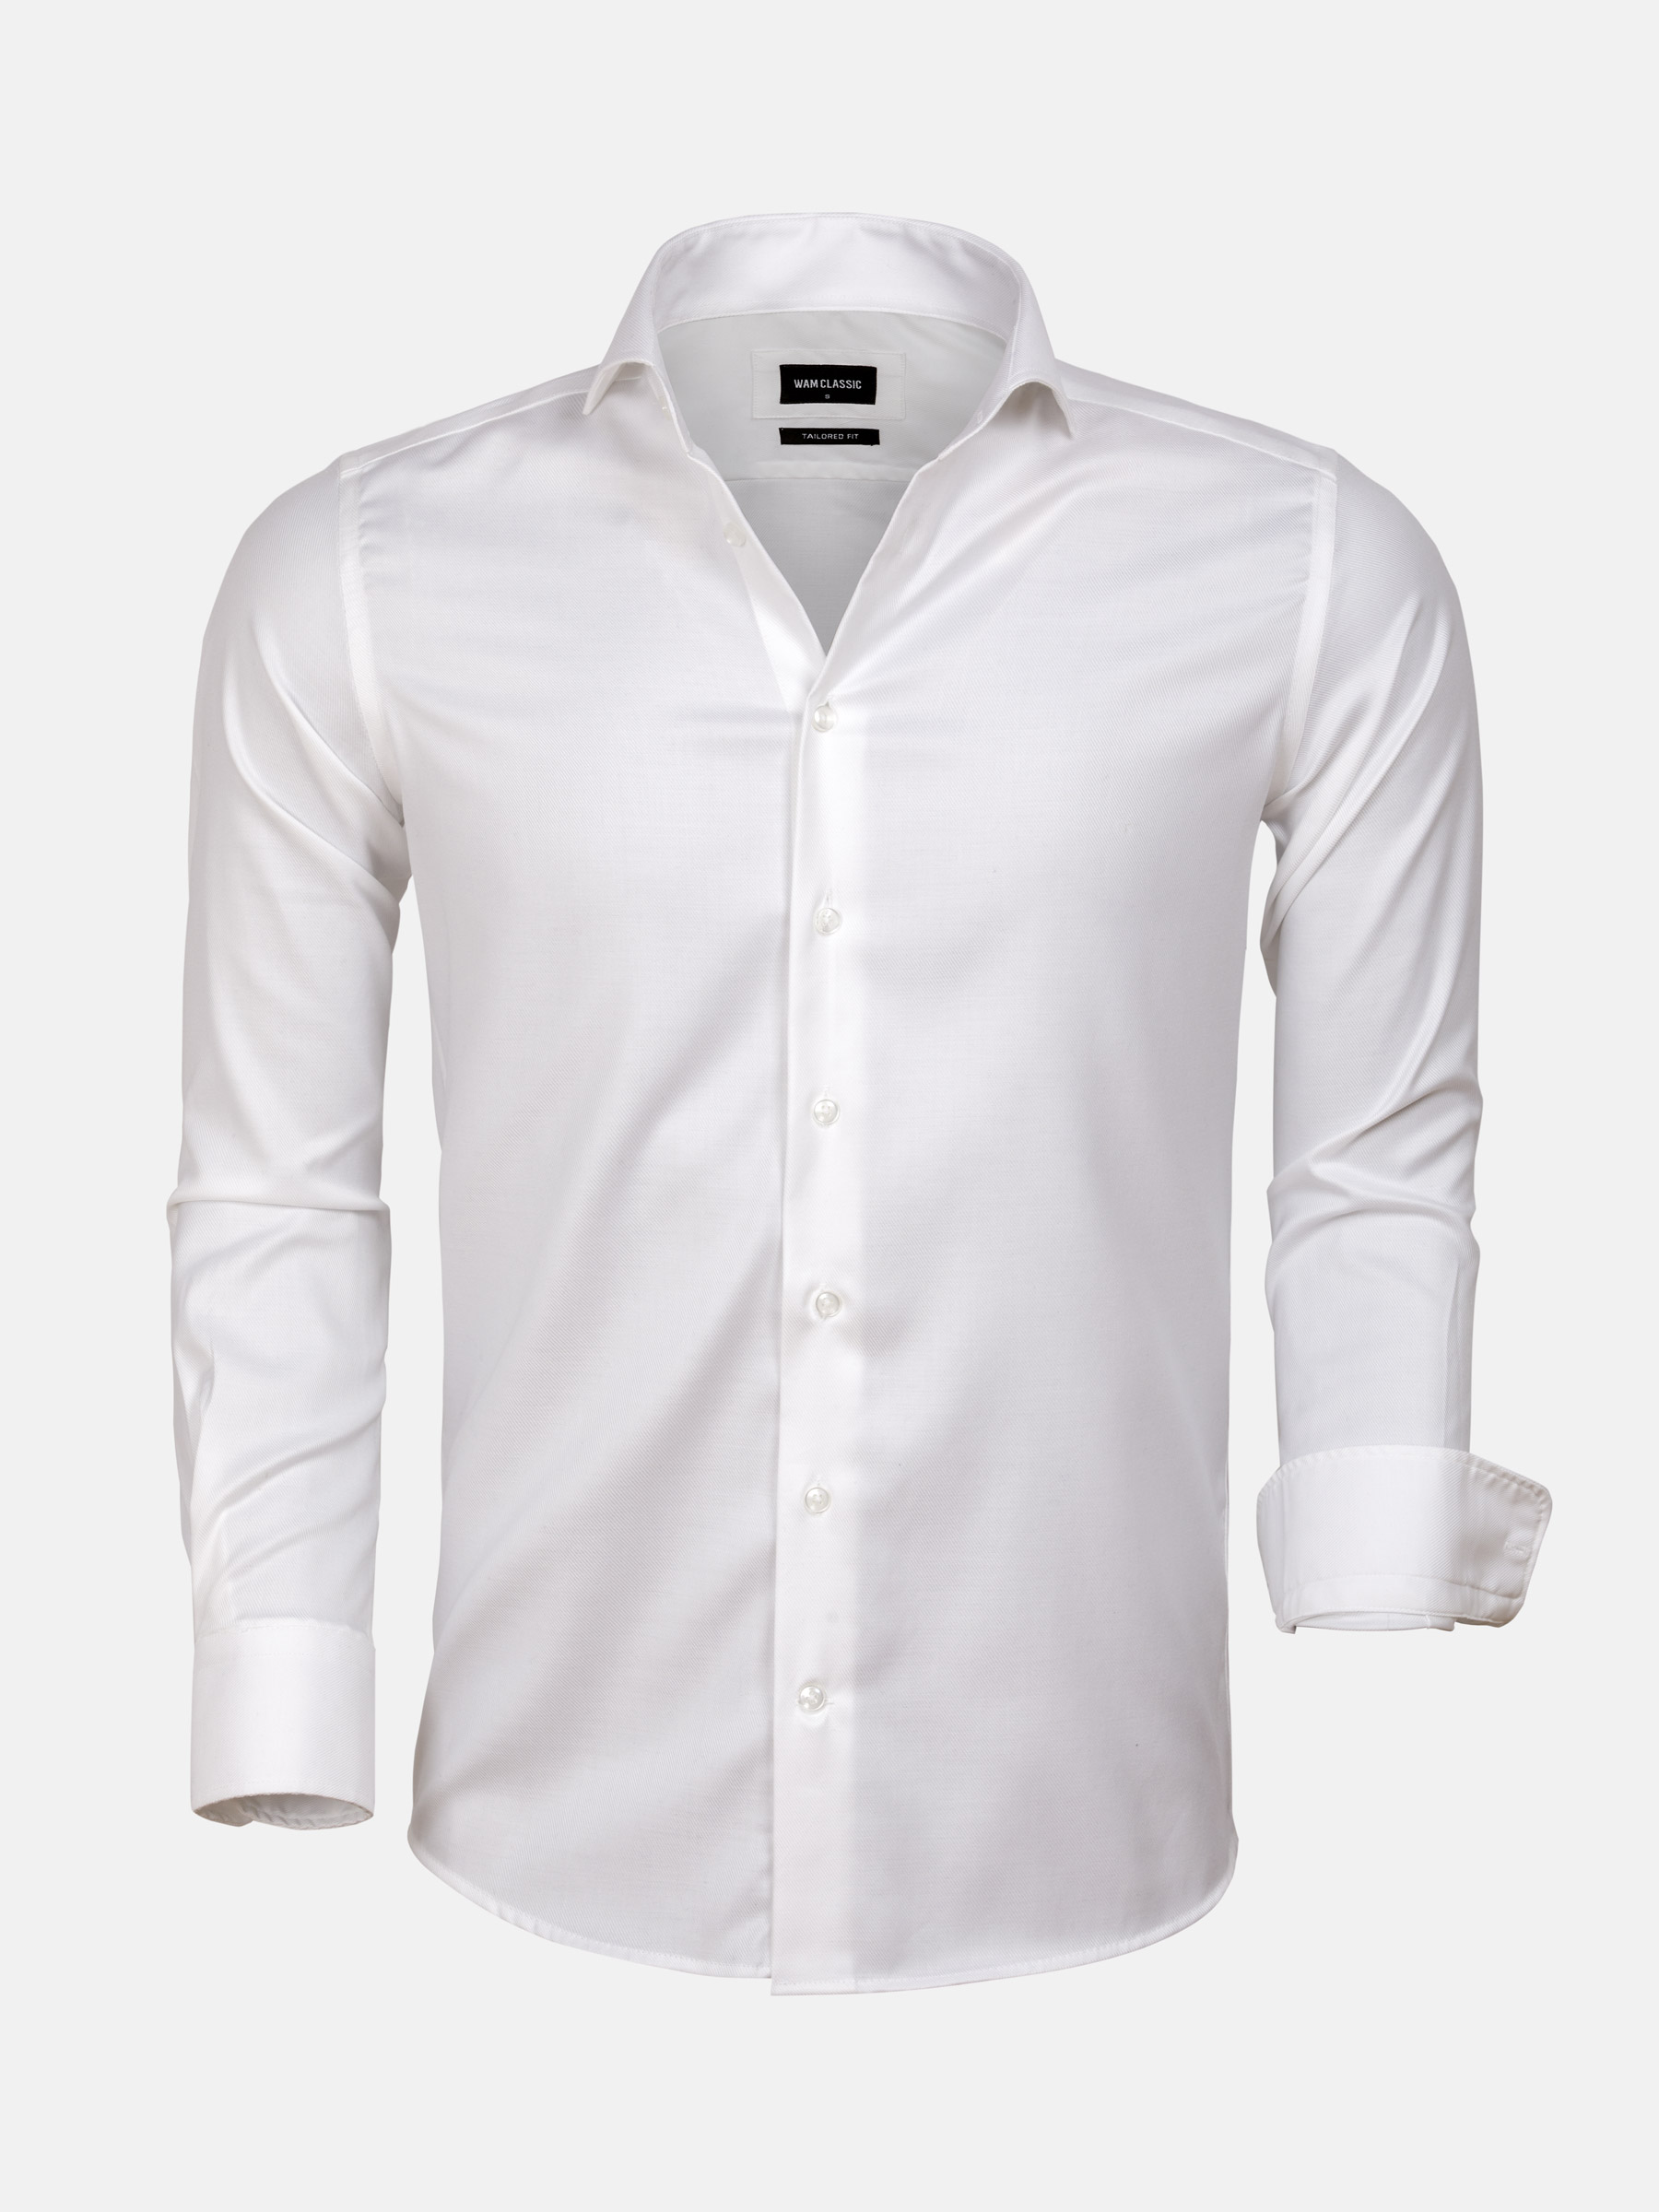 WAM Denim Overhemd 75614 Leganes White-